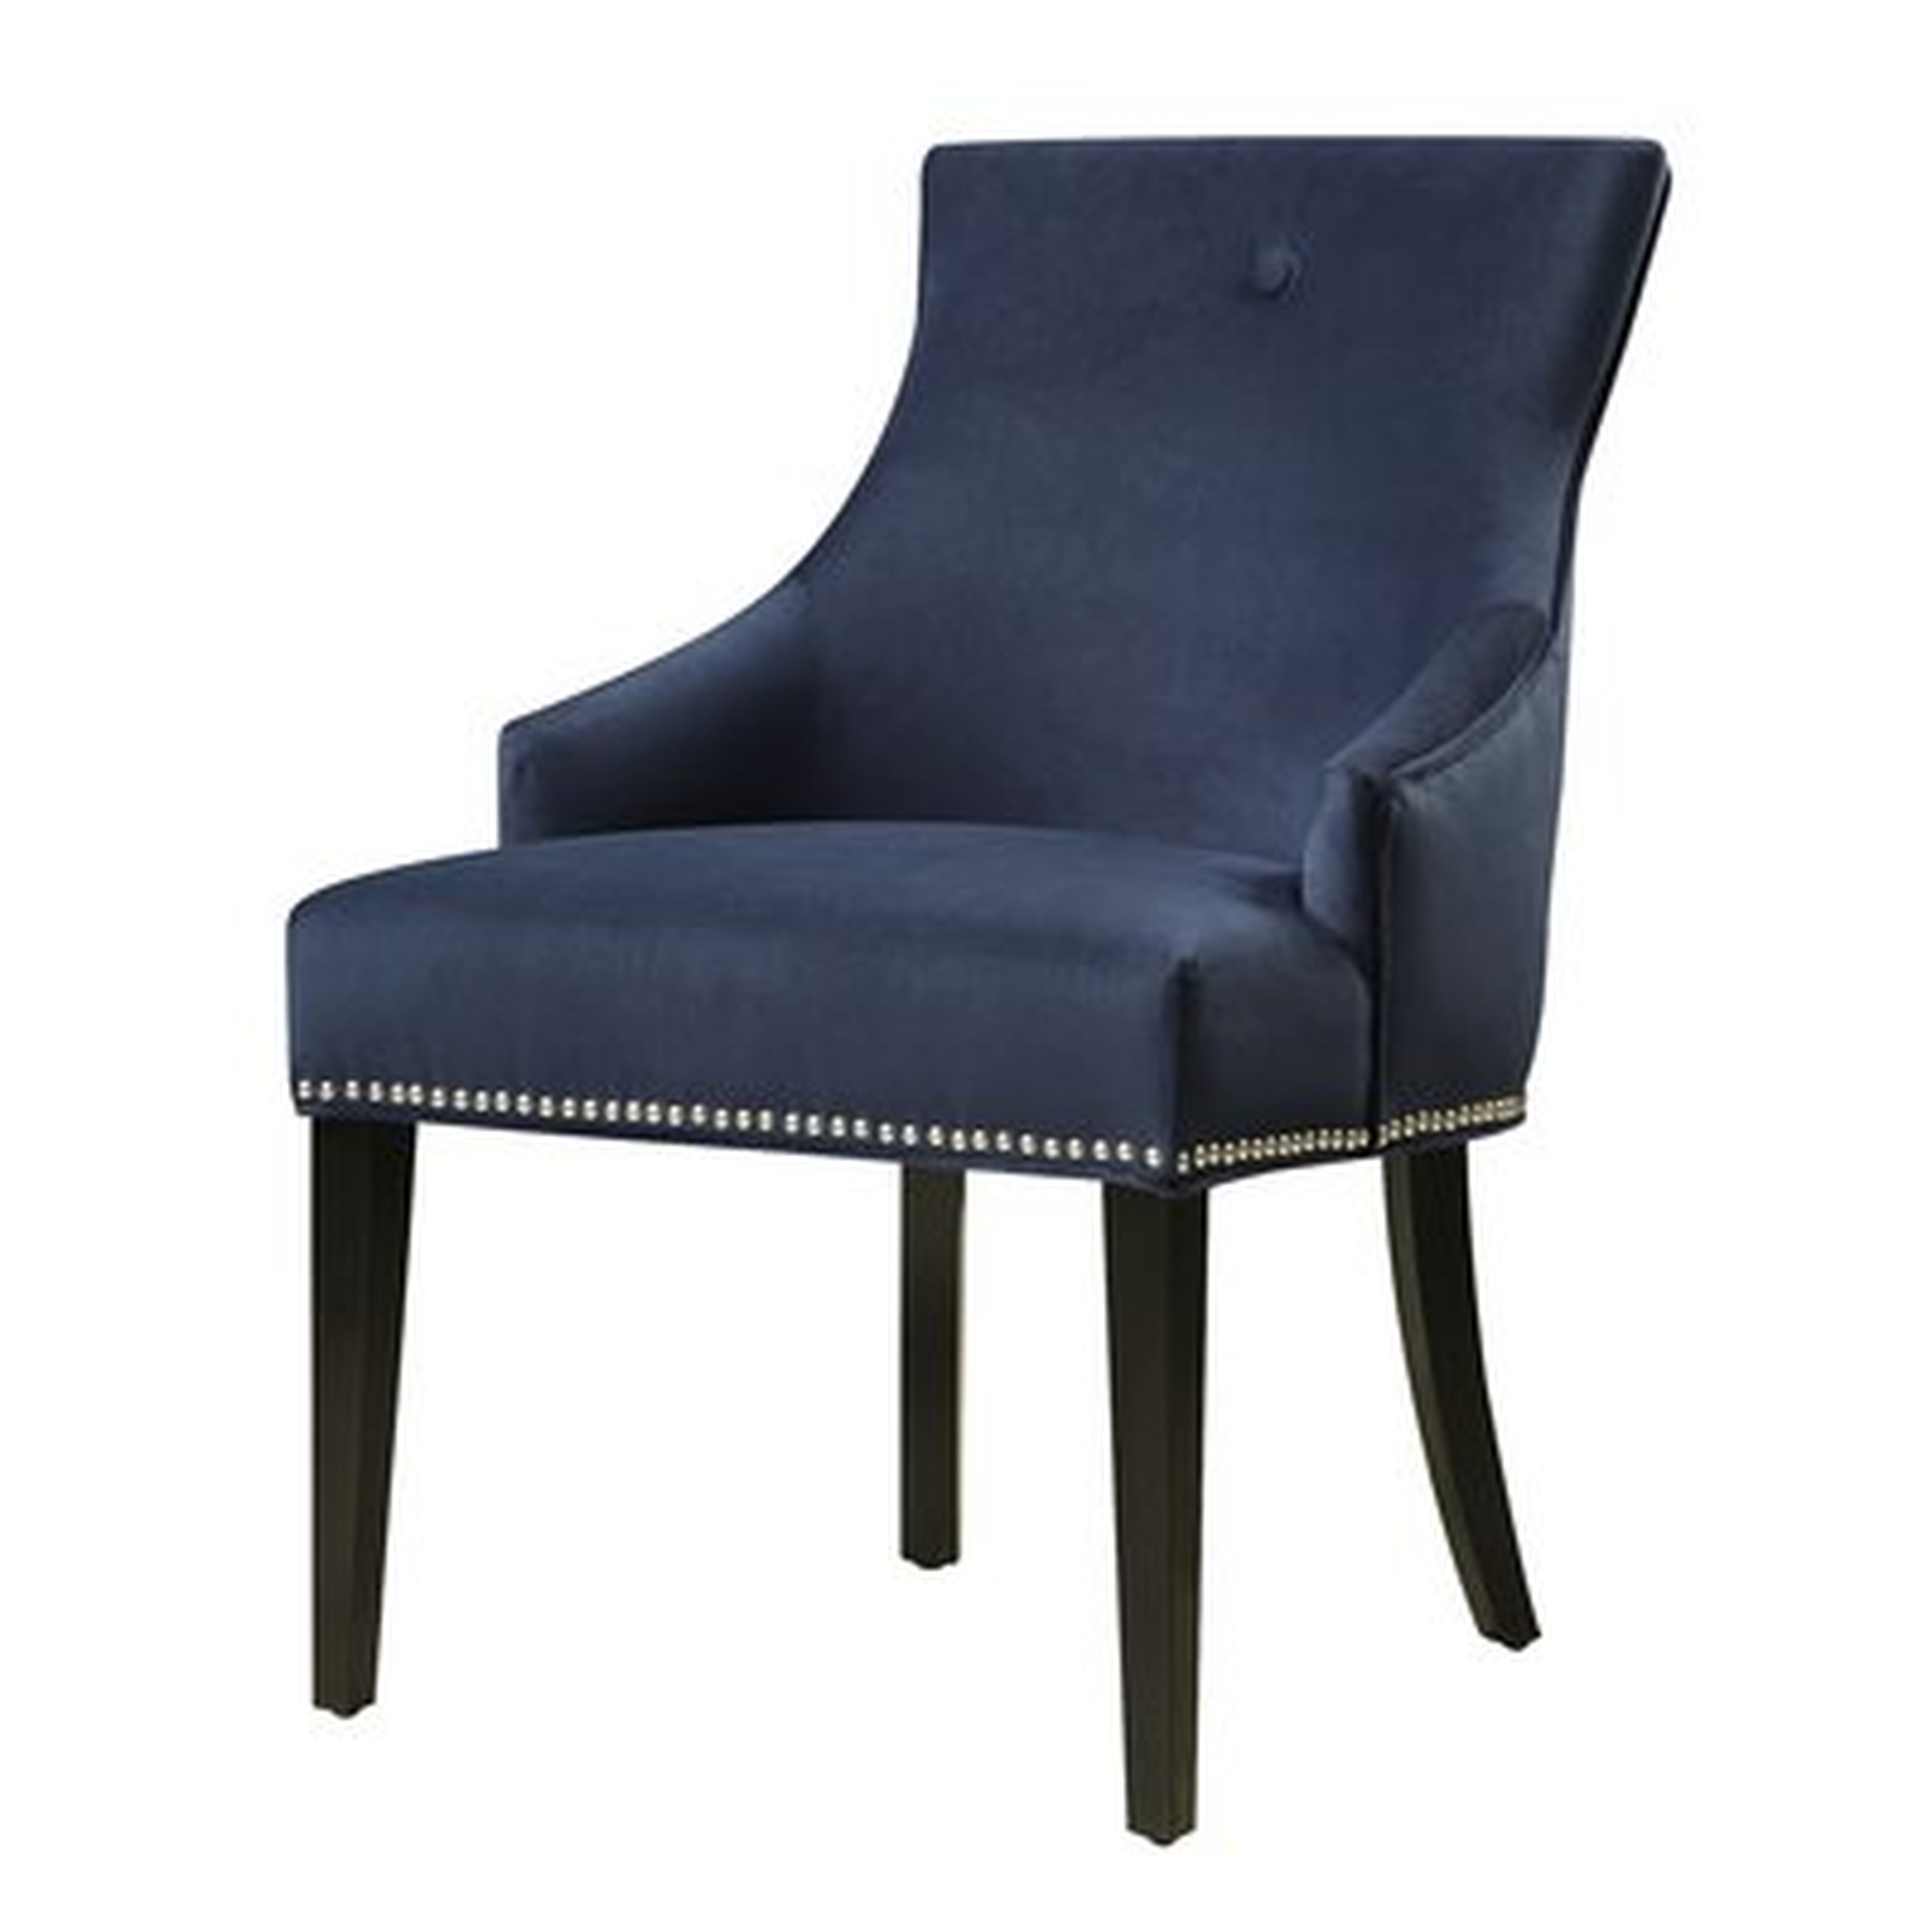 "Parsons Chair" - Wayfair